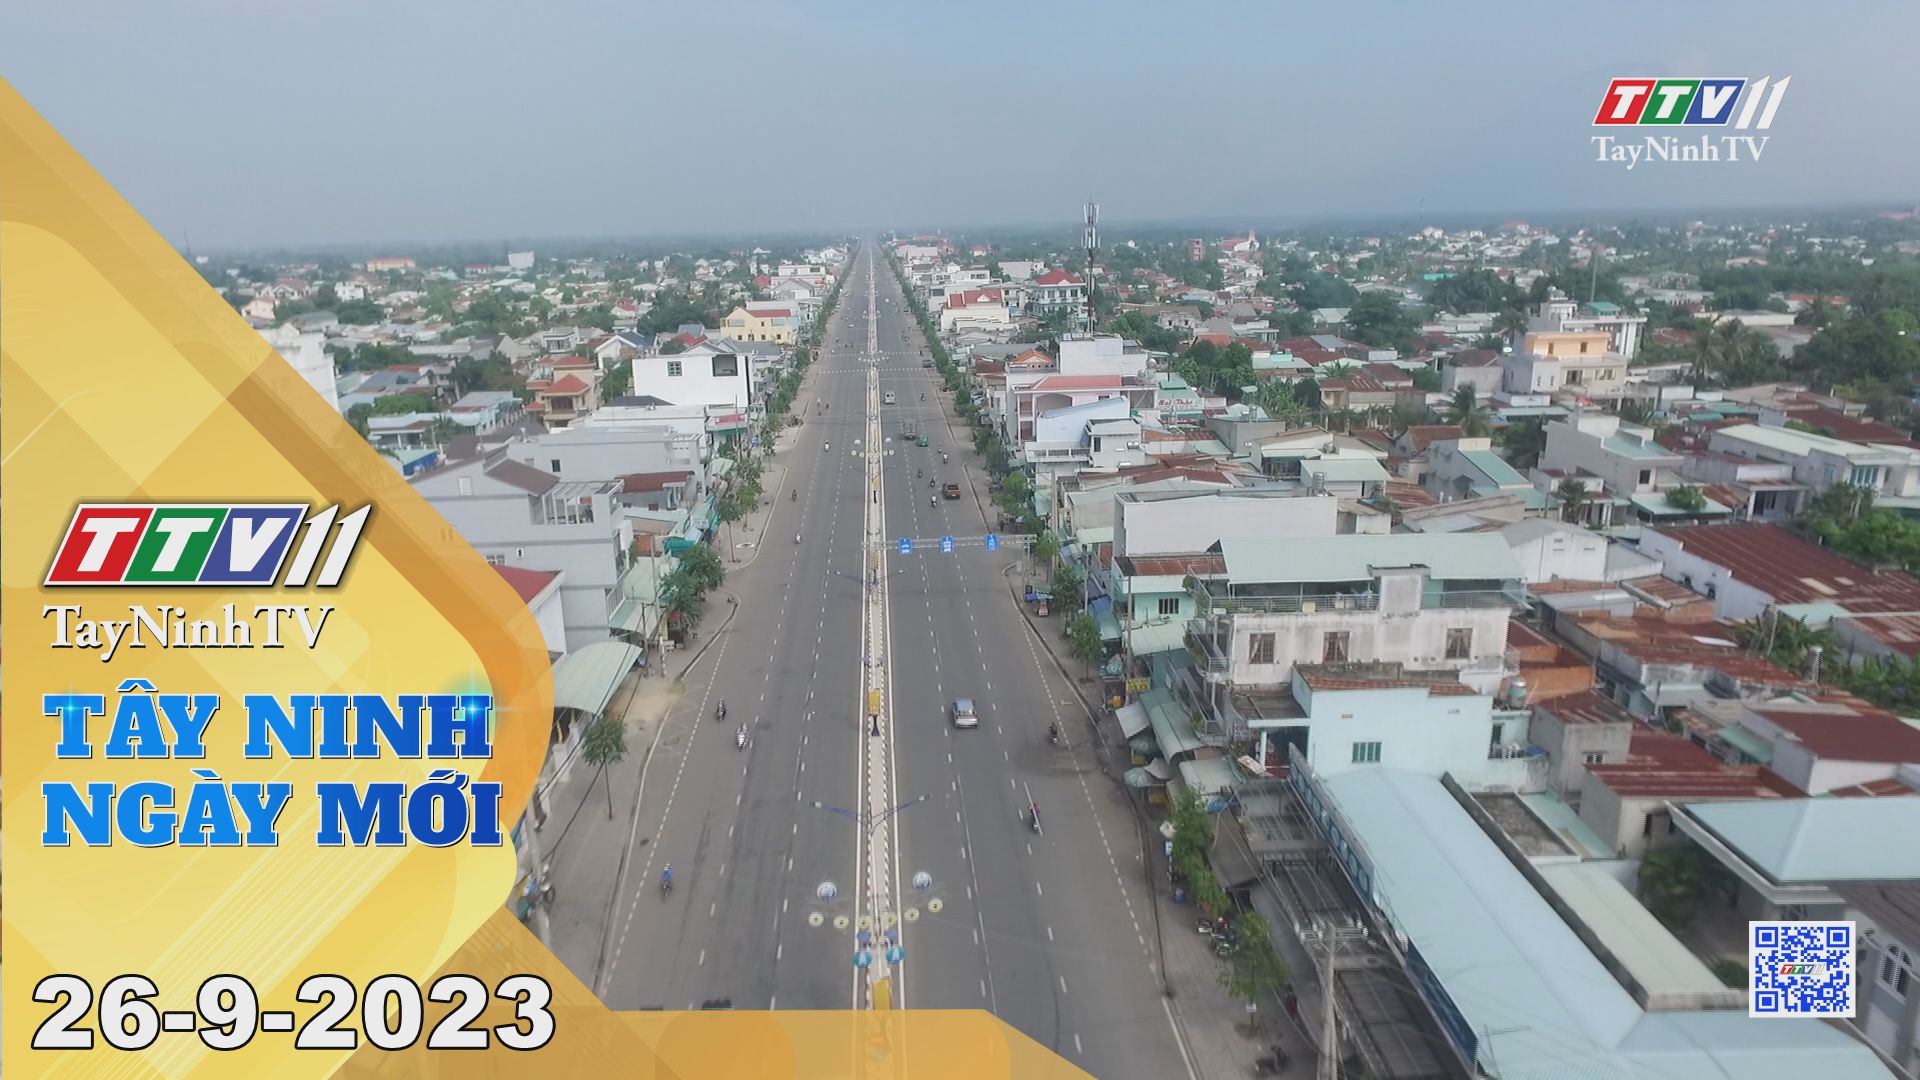 Tây Ninh ngày mới 26-9-2023 | Tin tức hôm nay | TayNinhTV